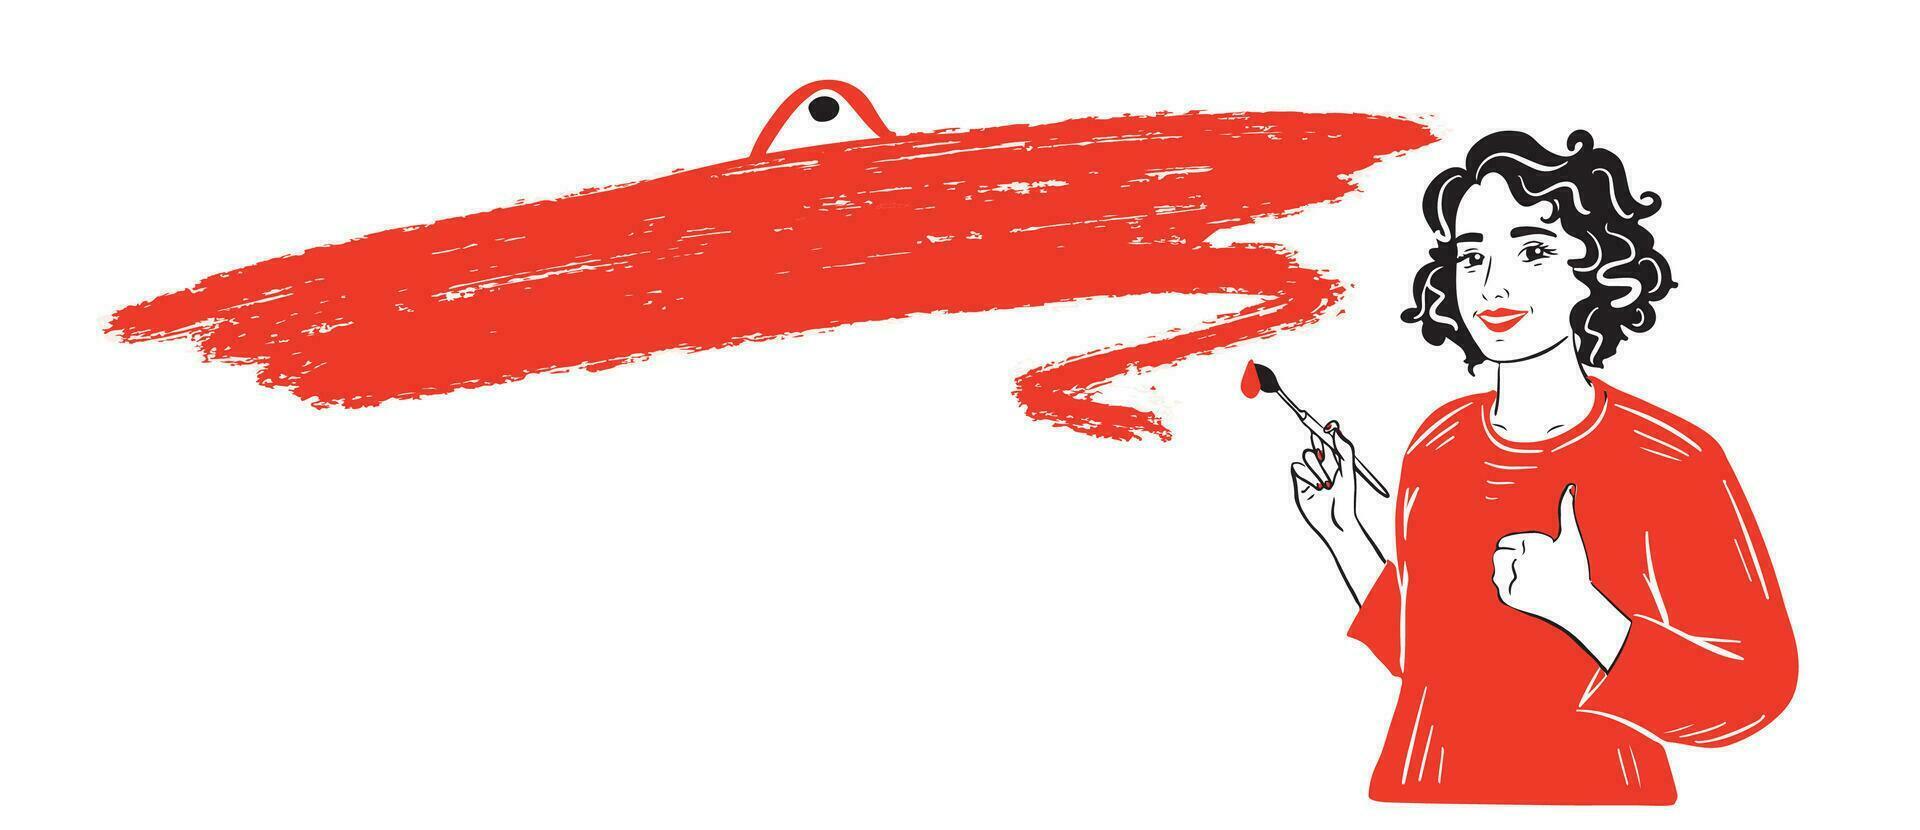 en flicka med en borsta målad en smeta av röd måla och visar en tummen upp.reklam,affisch.vektor illustration. vektor